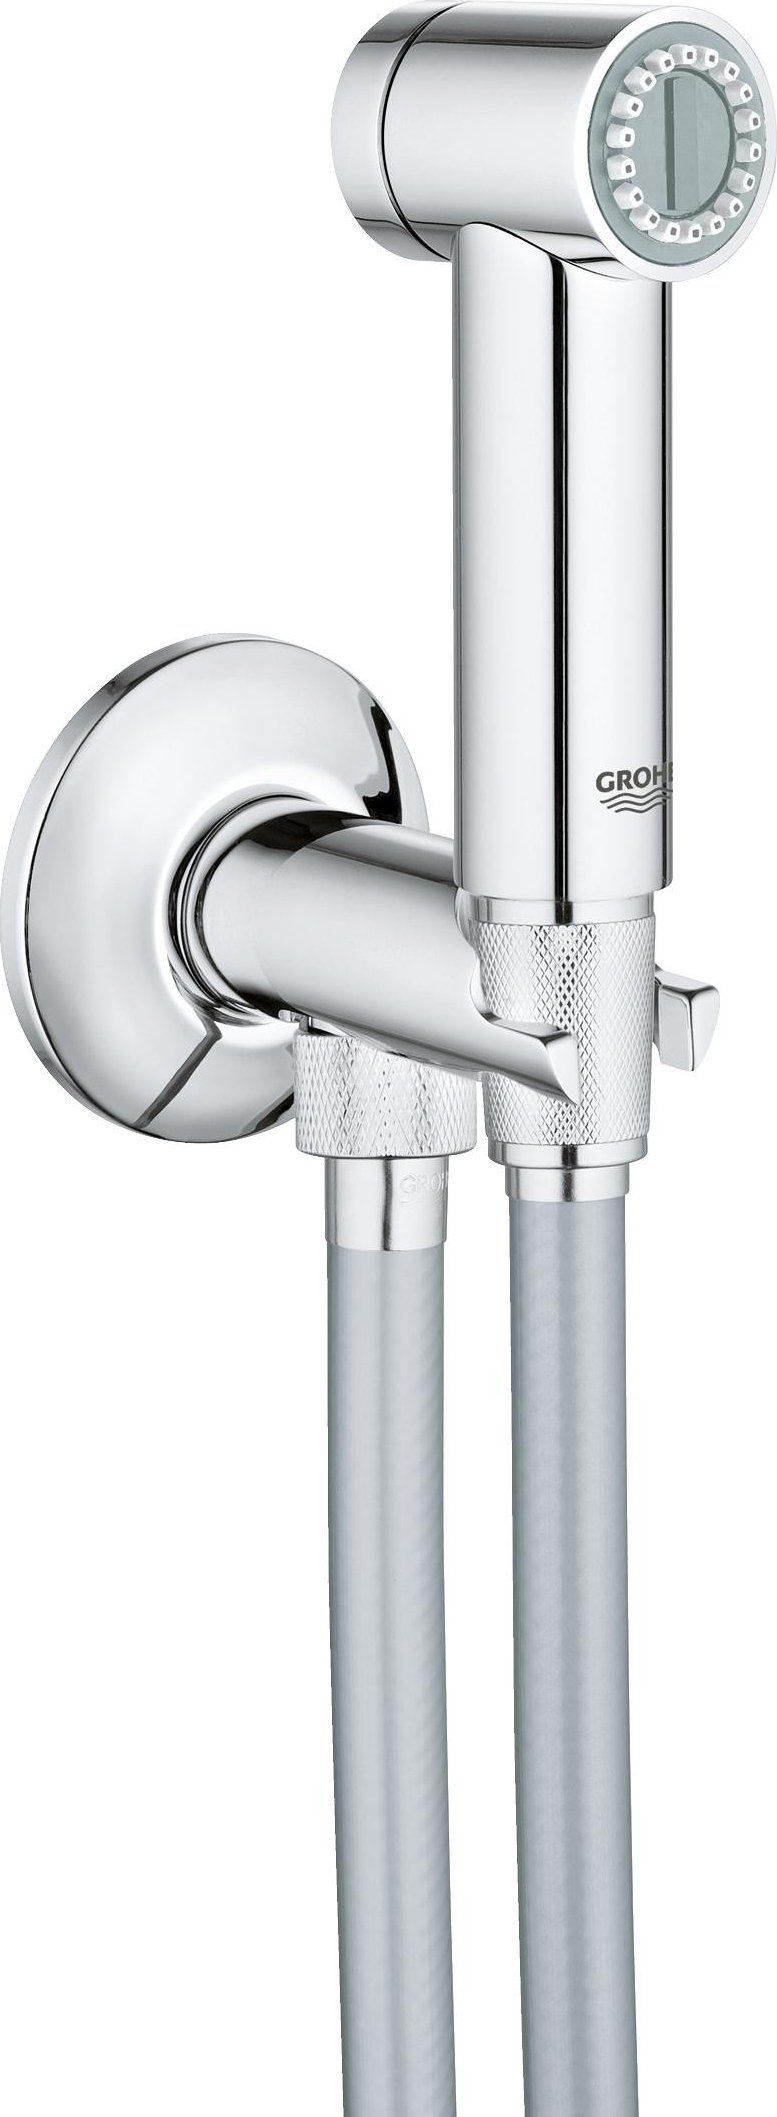 Гигиенический душ Grohe Sena Trigger Spray с держателем и шлангом 26329000